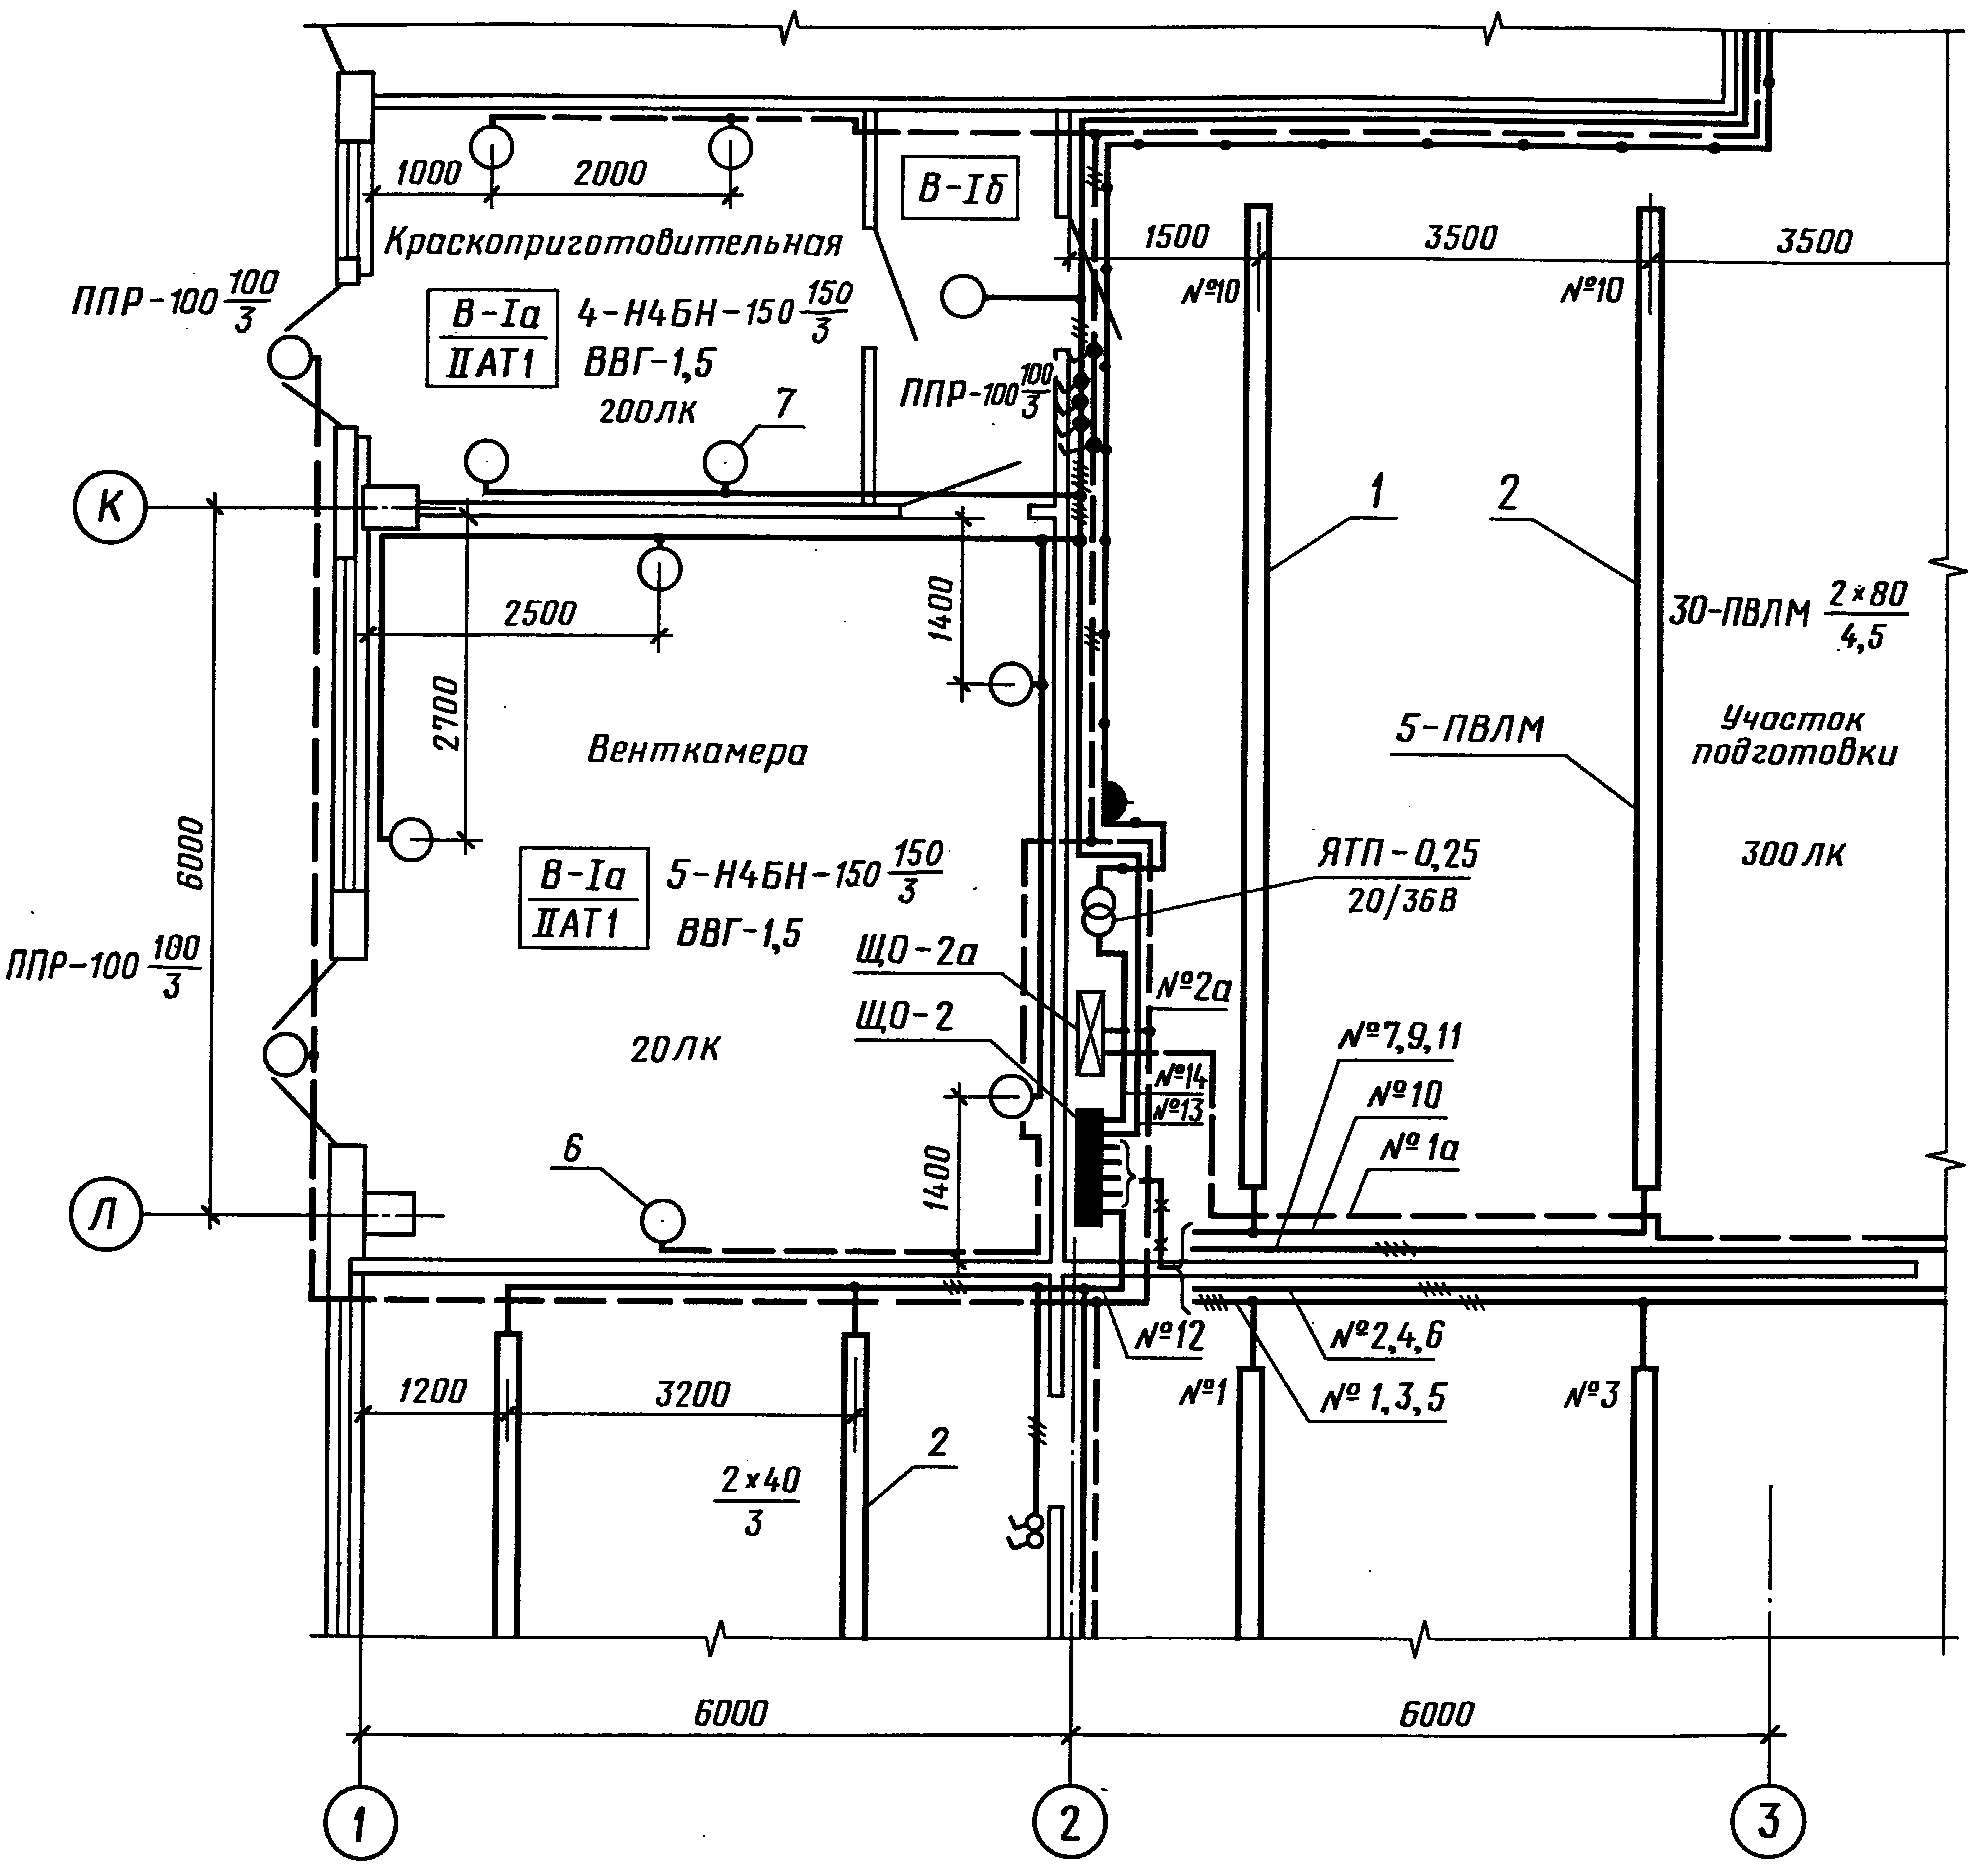 Схема электропроводки производственного помещения